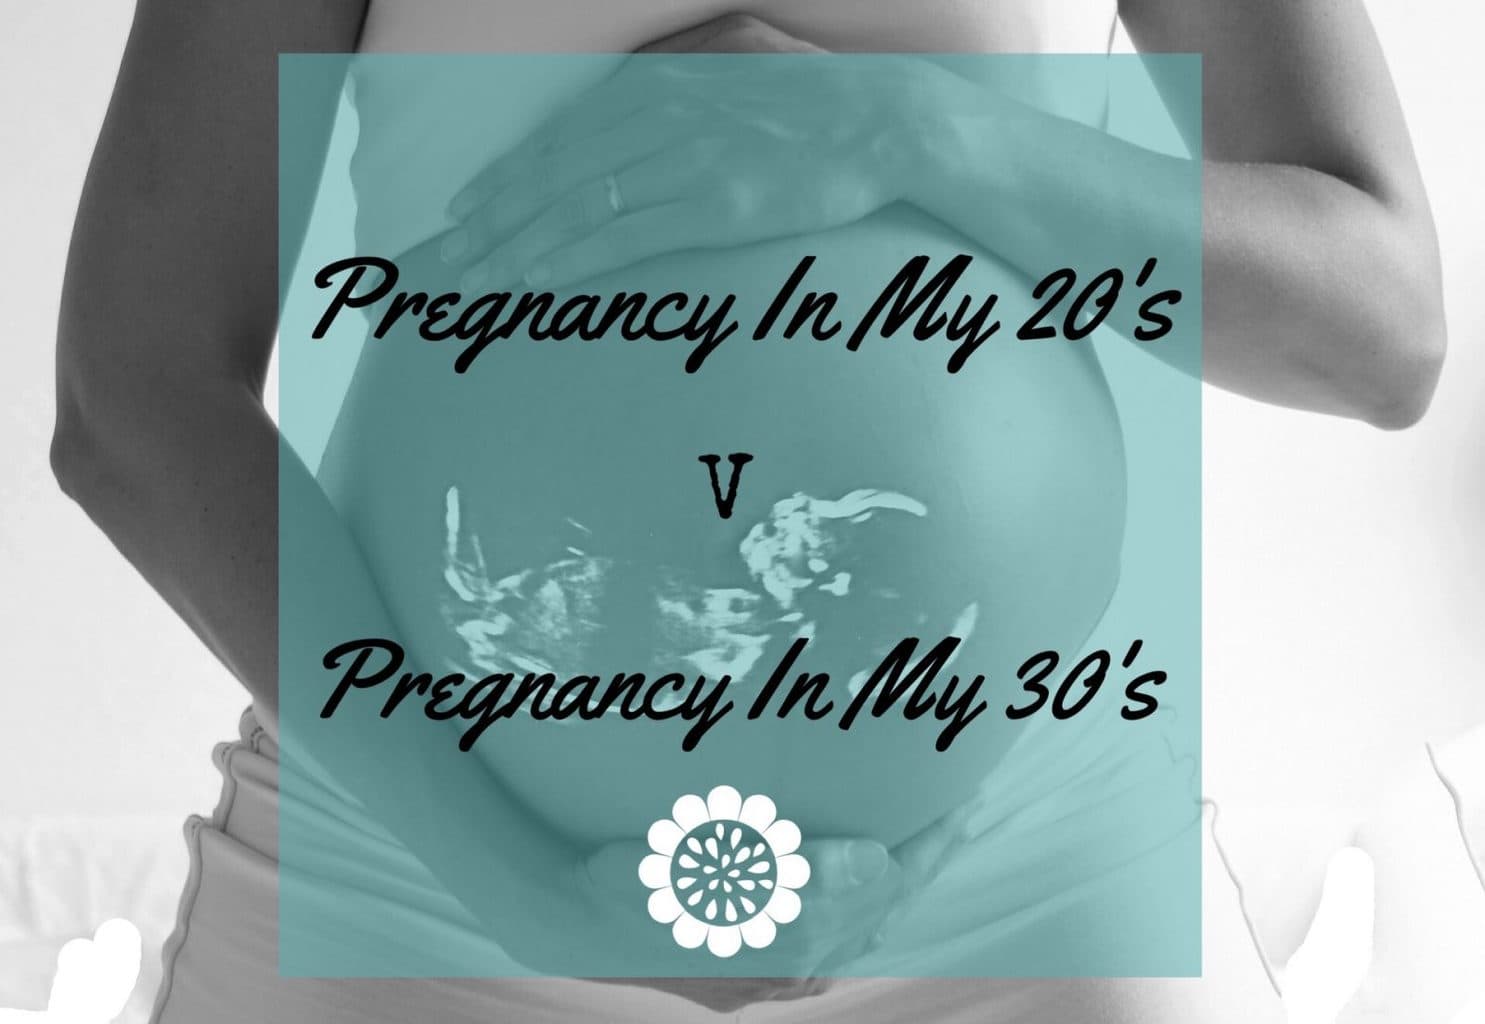 Pregnancy In My 20s Vs Pregnancy In My 30s